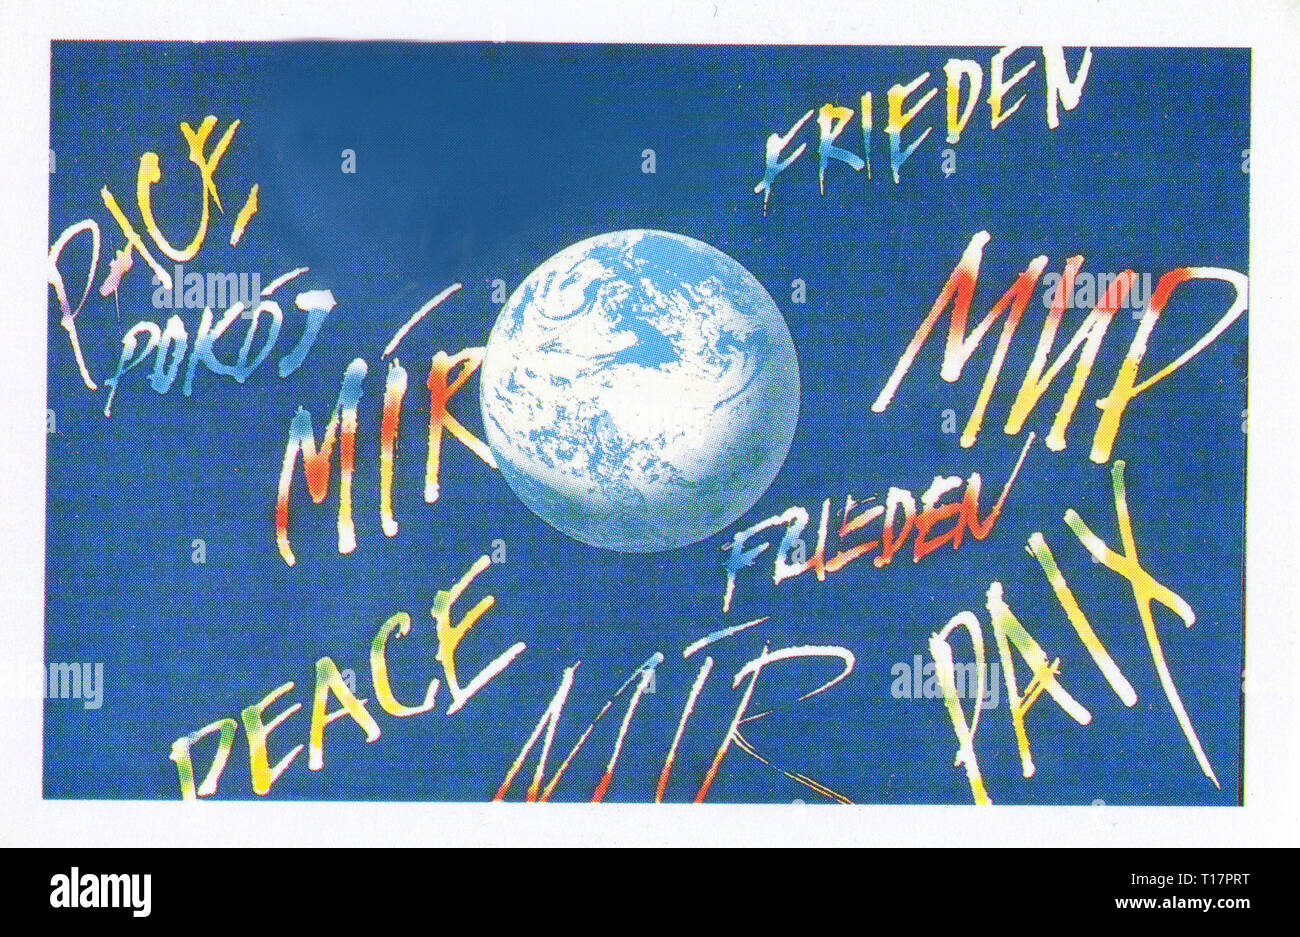 Cubierta del calendario de bolsillo 1989. Unión de Repúblicas Socialistas Soviéticas. El cartel está dedicado a la lucha por la paz y el progreso social. Foto de stock